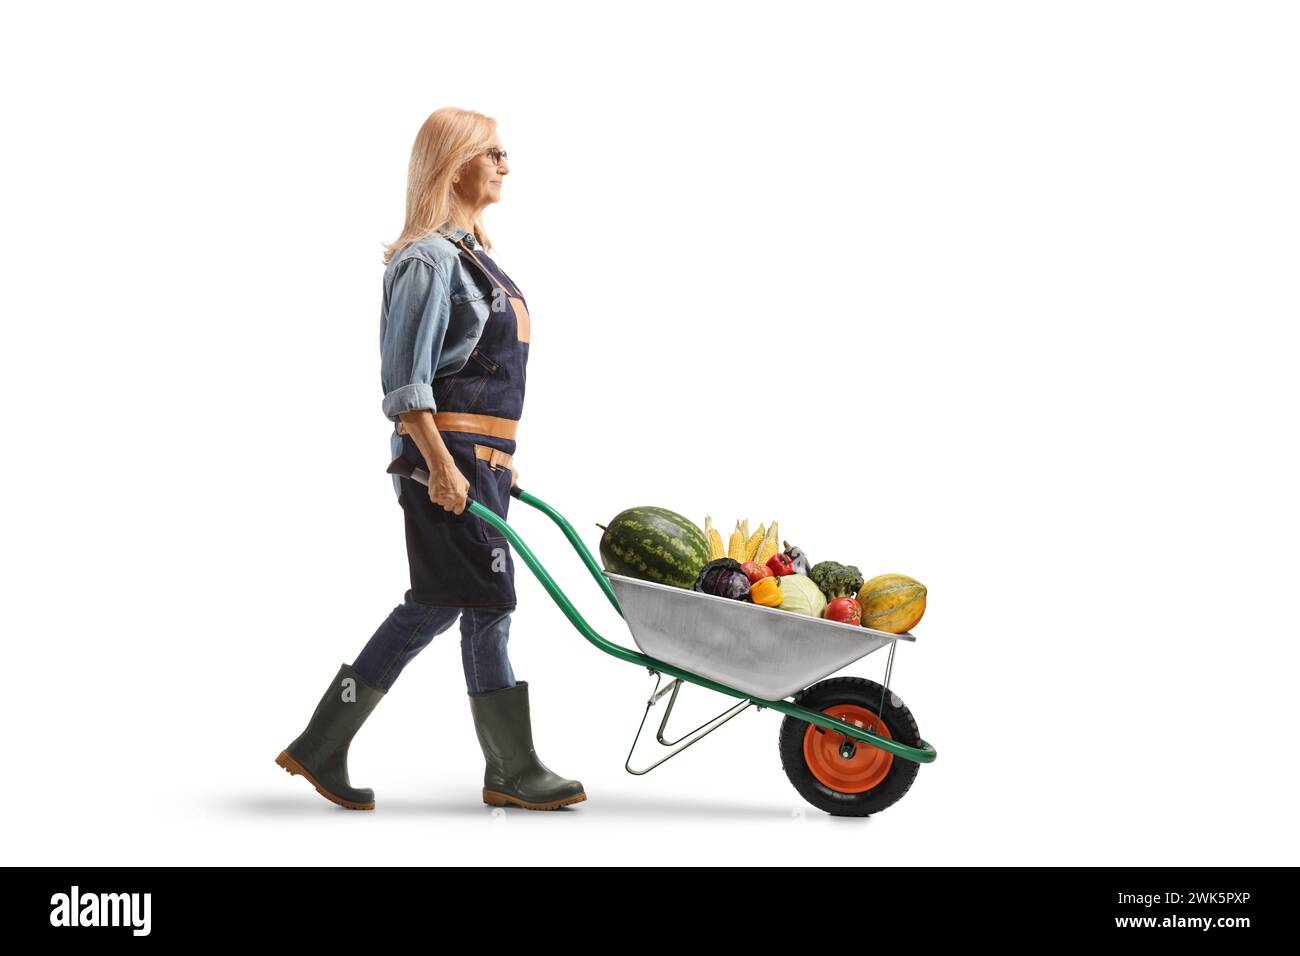 Foto a tutta lunghezza di una donna giardiniera che spinge una carriola con frutta e verdura isolata su sfondo bianco Foto Stock